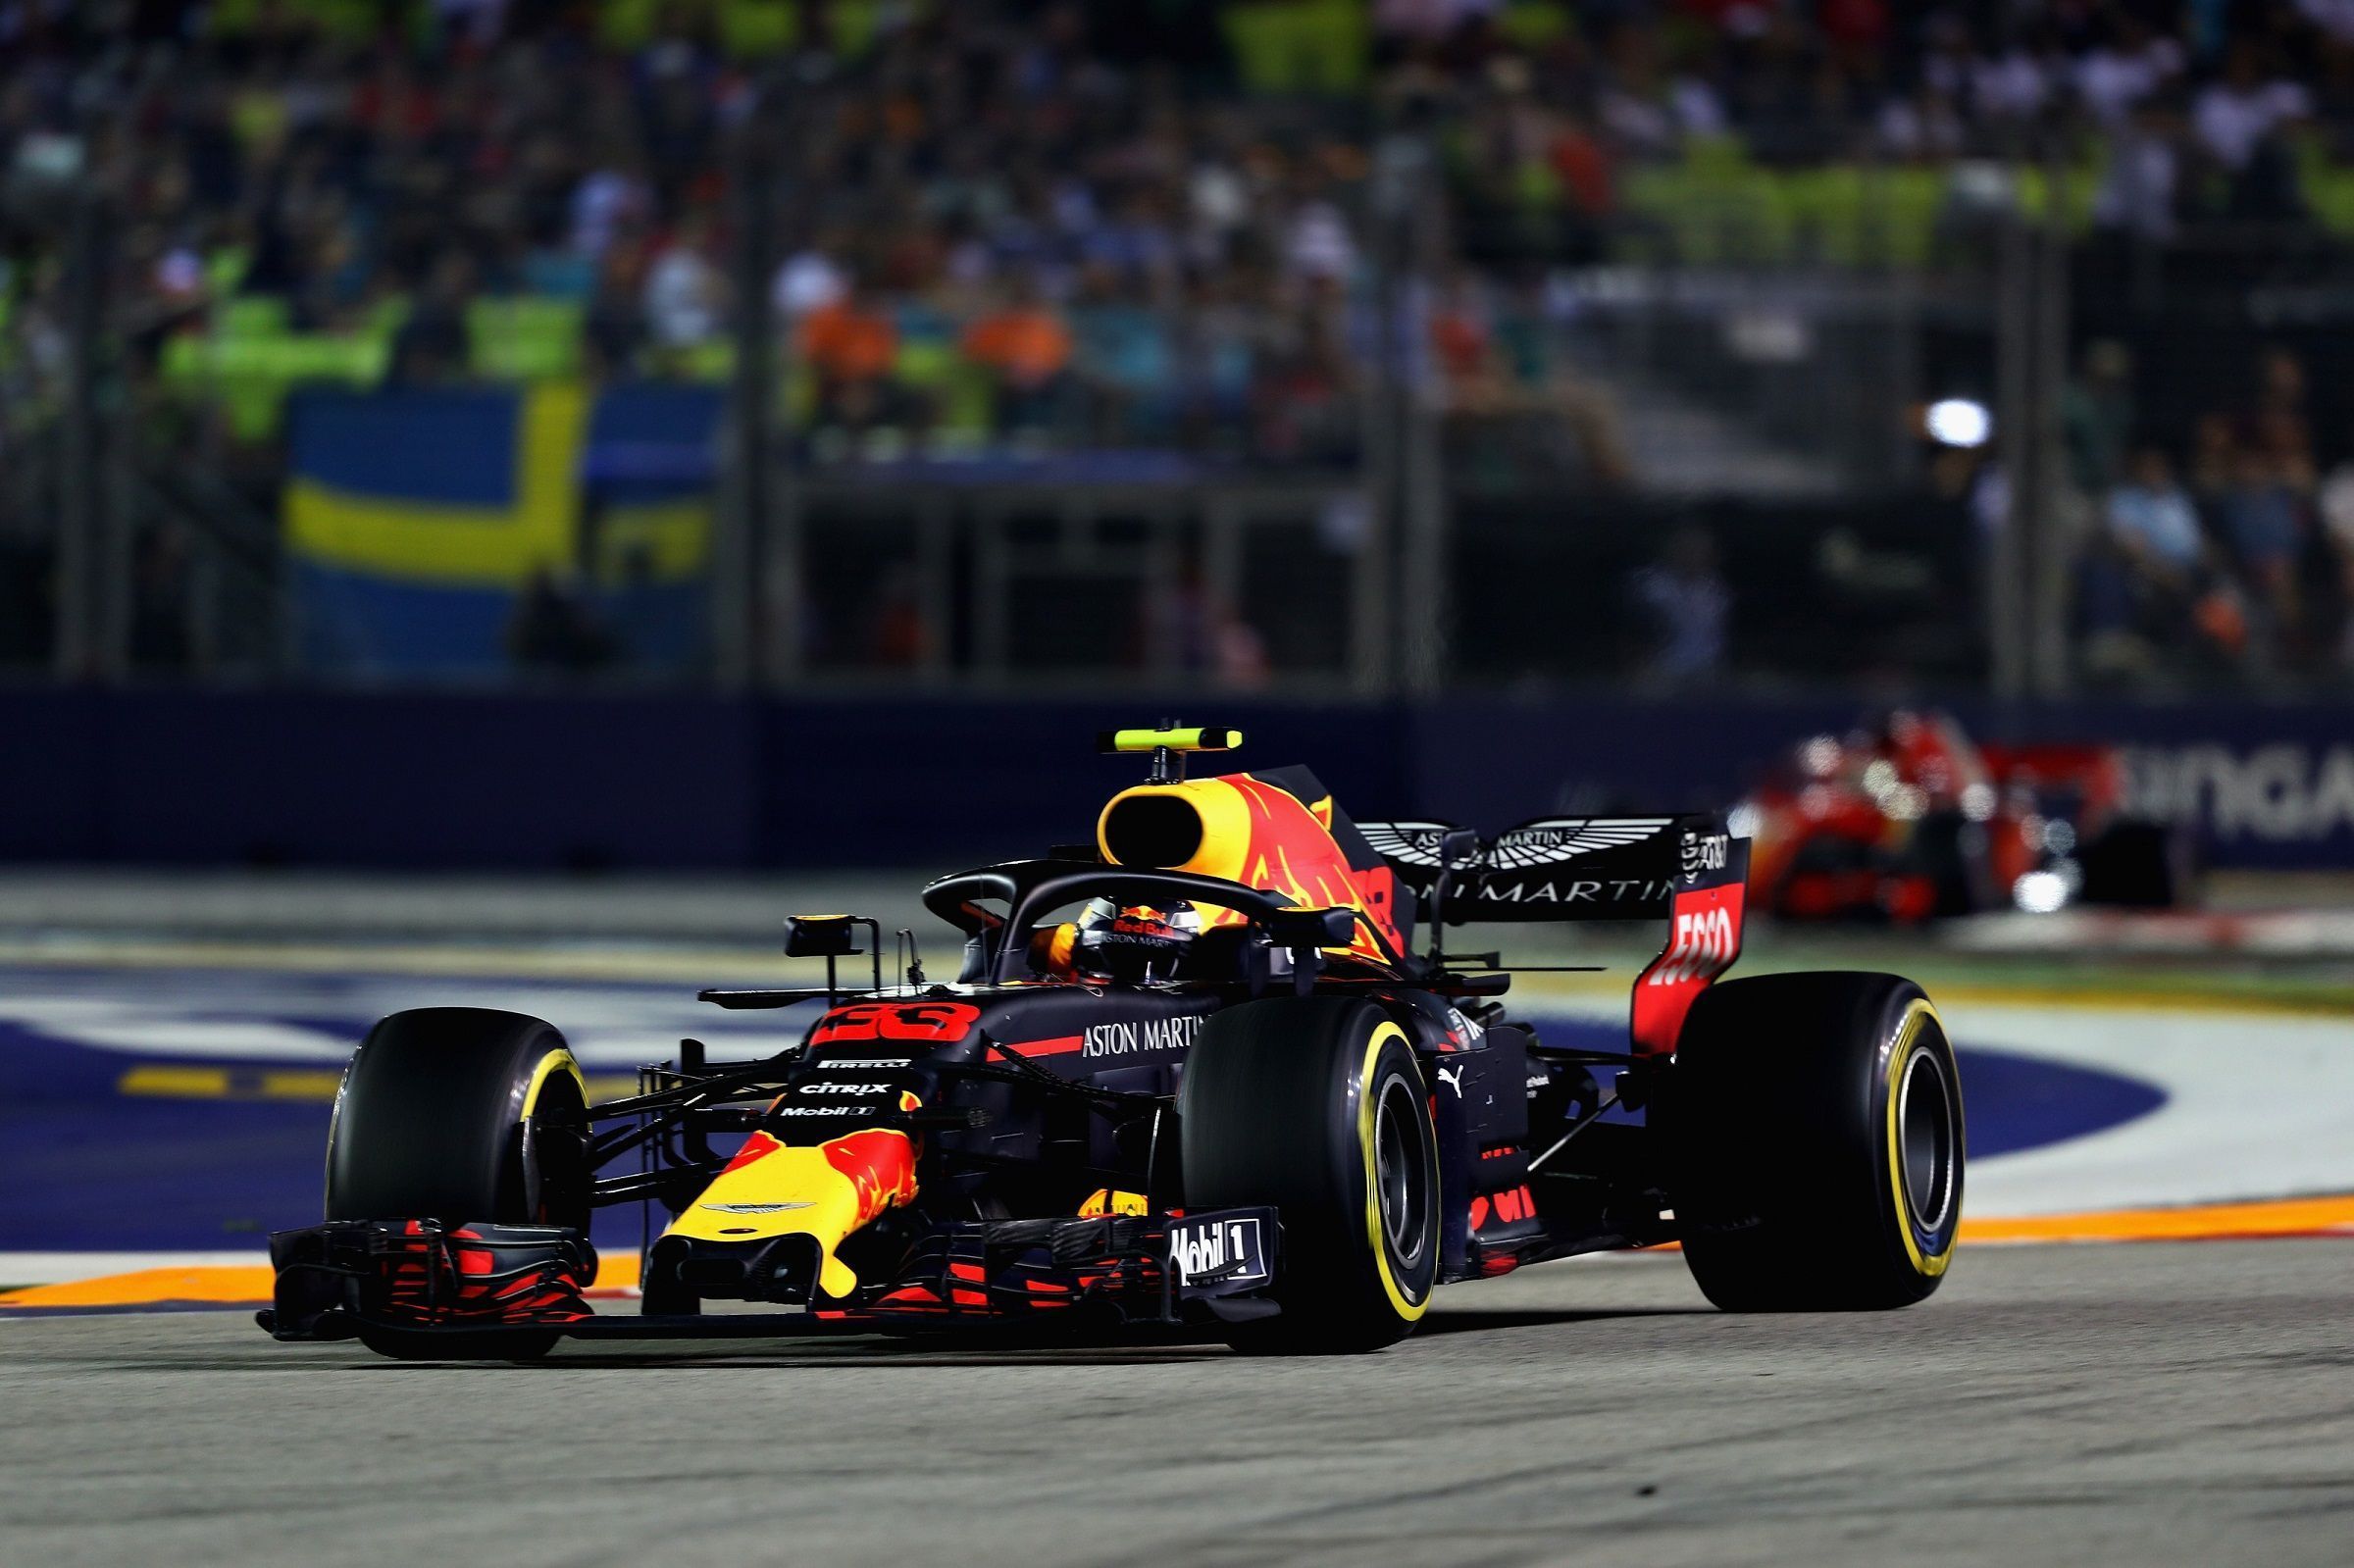 Max Verstappen leading Sebastian Vettel